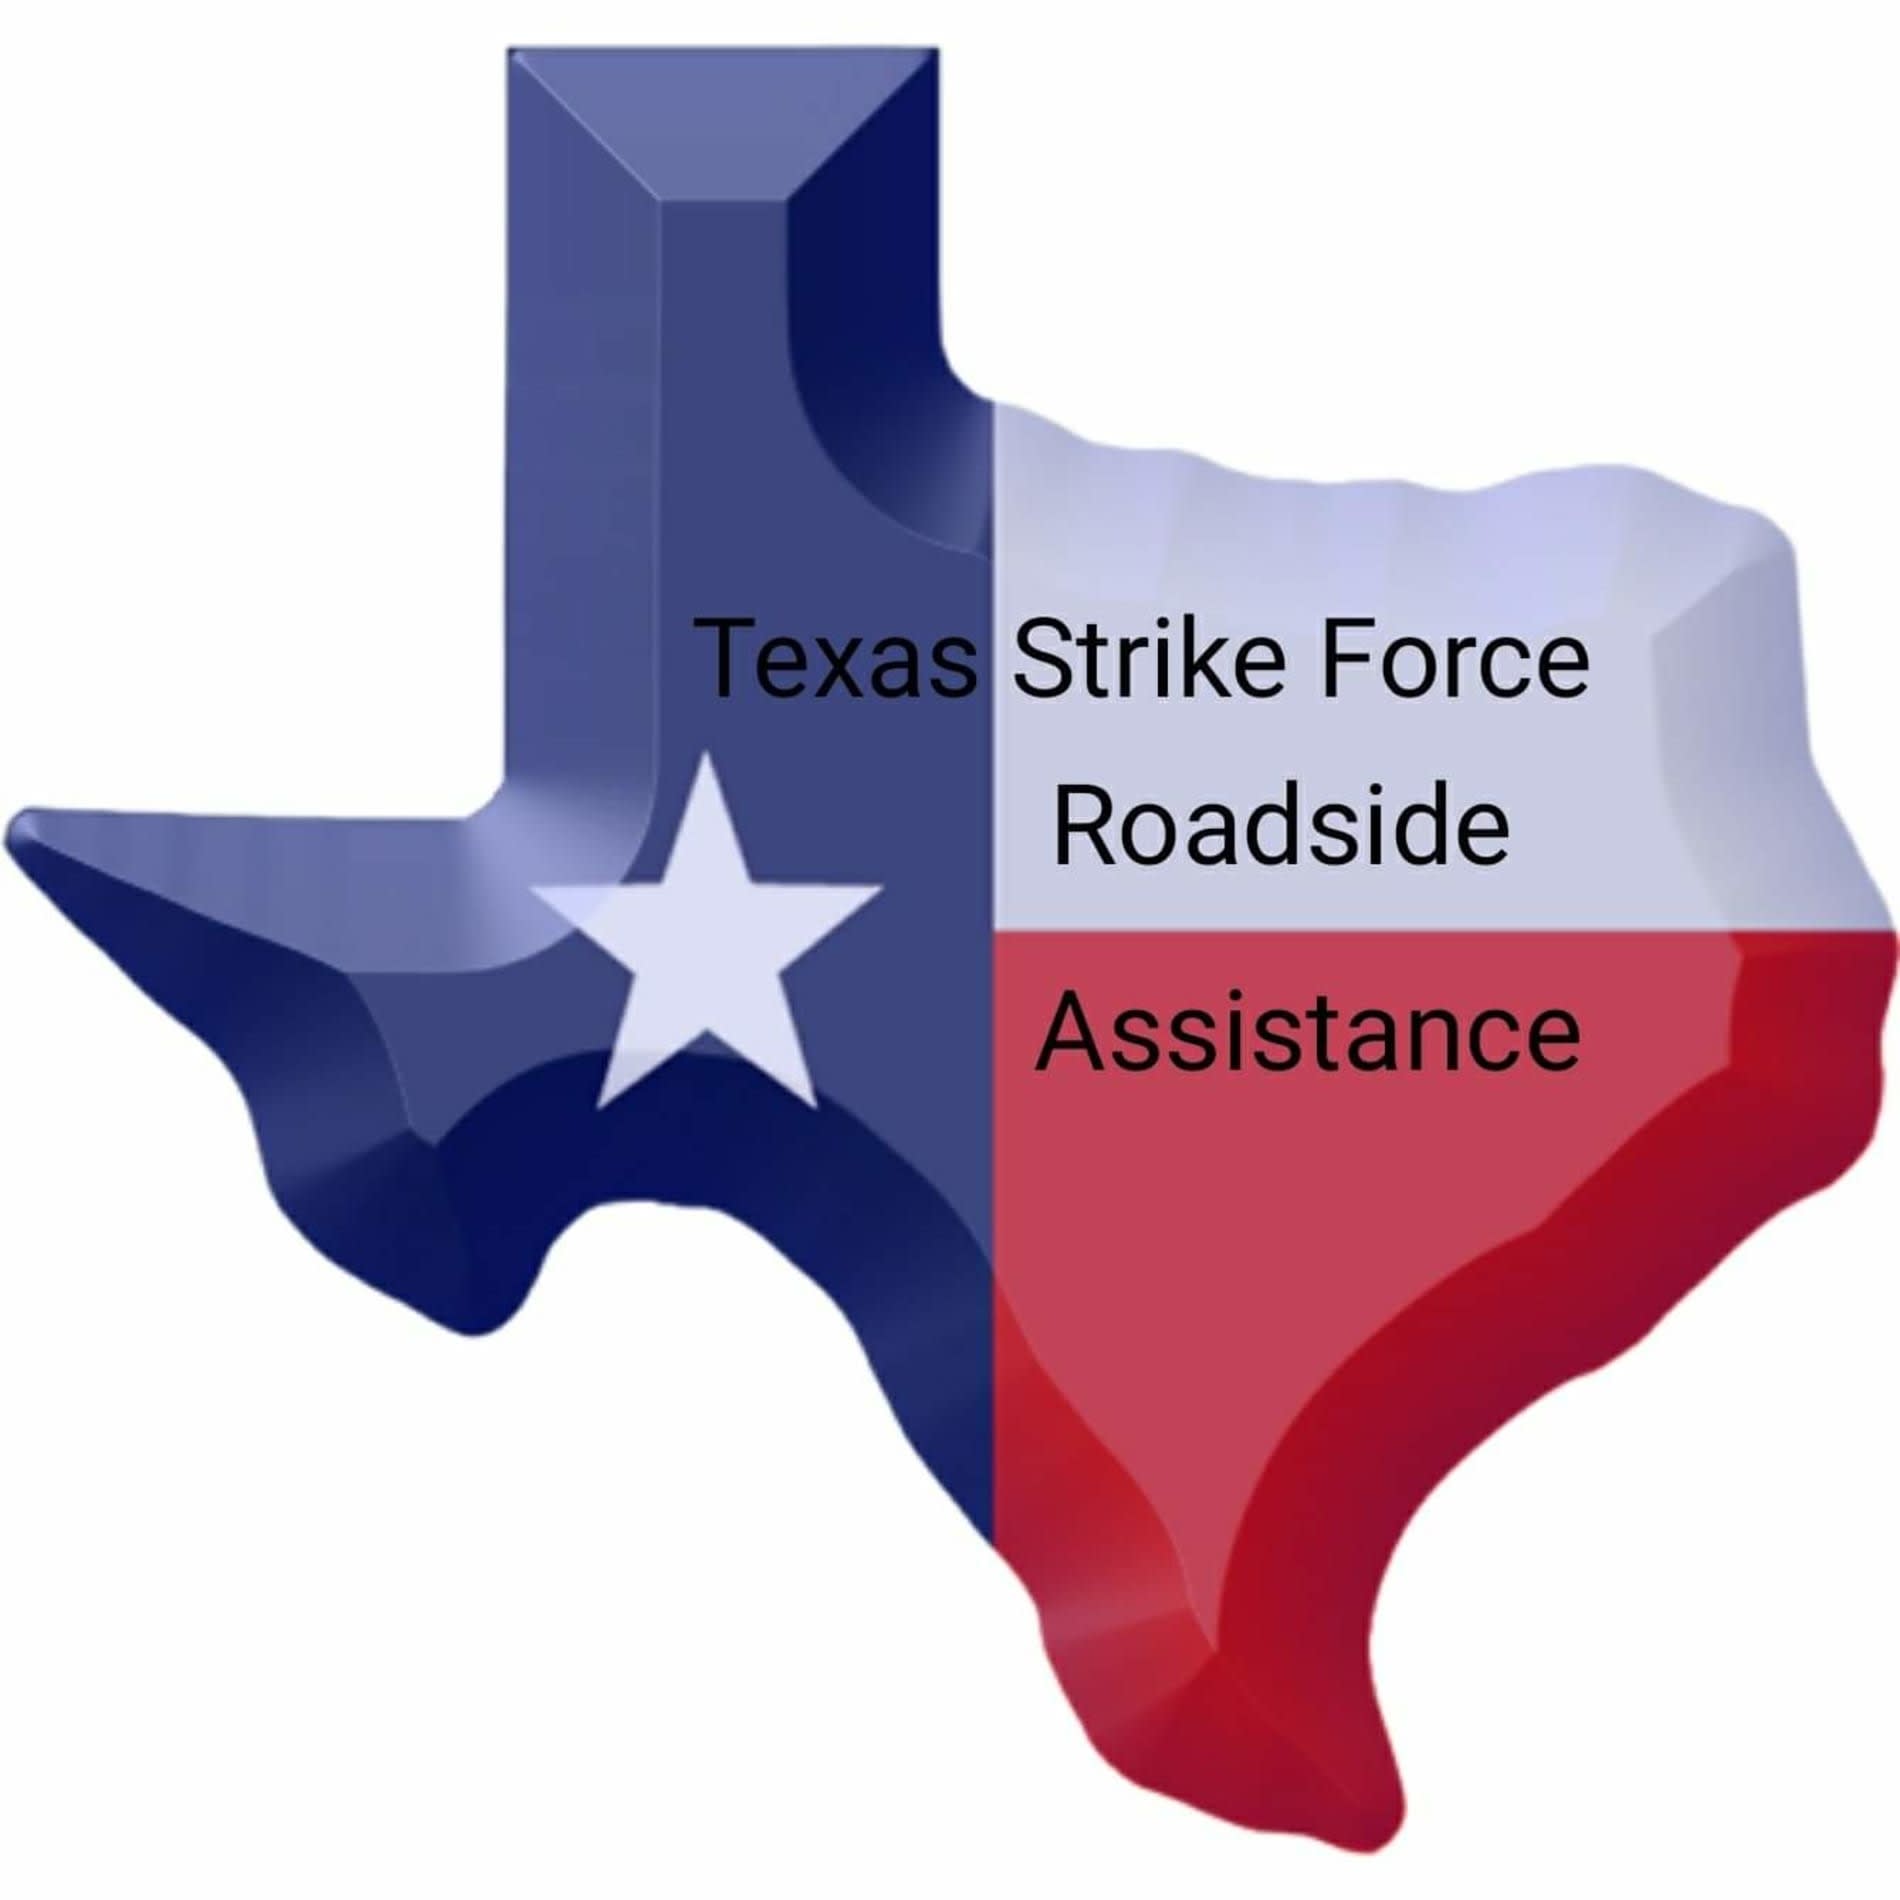 Texas Strike Force Roadside Assistance